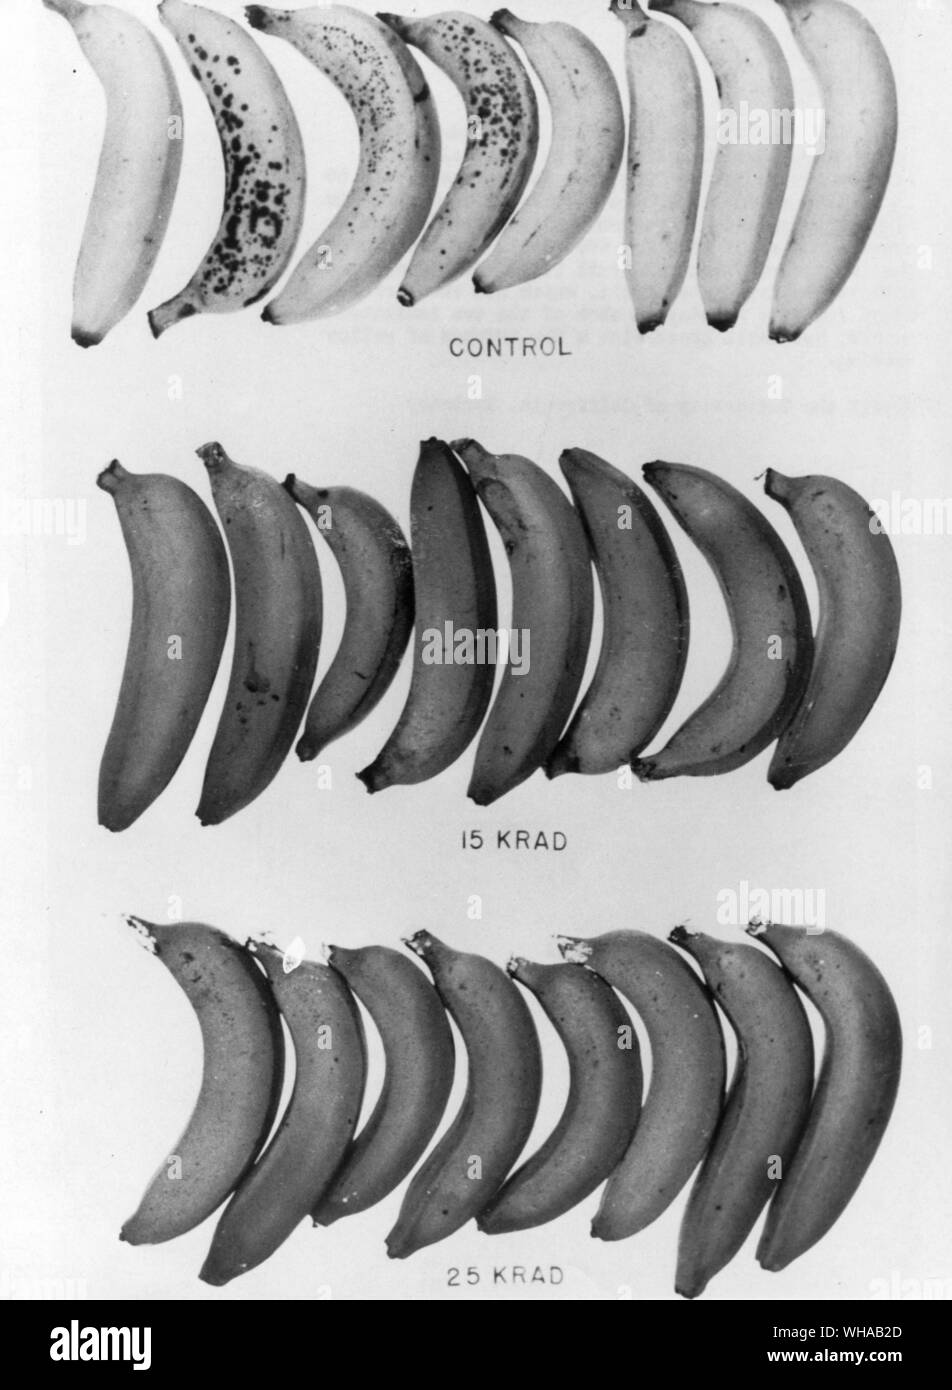 Strahlung Haltbarmachung von Obst. Bananen insbesondere gefunden worden von Strahlung aus solchen Quellen wie Kobalt 60 in Studien, die von der Universität von Kalifornien durchgeführt werden. Einfache, kostengünstige Behandlung Verzögerungen Reifung und erweitert die sshelf Leben für zwei Wochen. Auf dem Foto die beiden Woche alt control Obst, oben, war eine tiefe Gelb; das bestrahlte Früchte, die für fünf Minuten an jeder der beiden angegebenen Niveaus bestrahlt worden war, war immer noch Grün mit ein paar Berührungen von Gelb angezeigt. Stockfoto